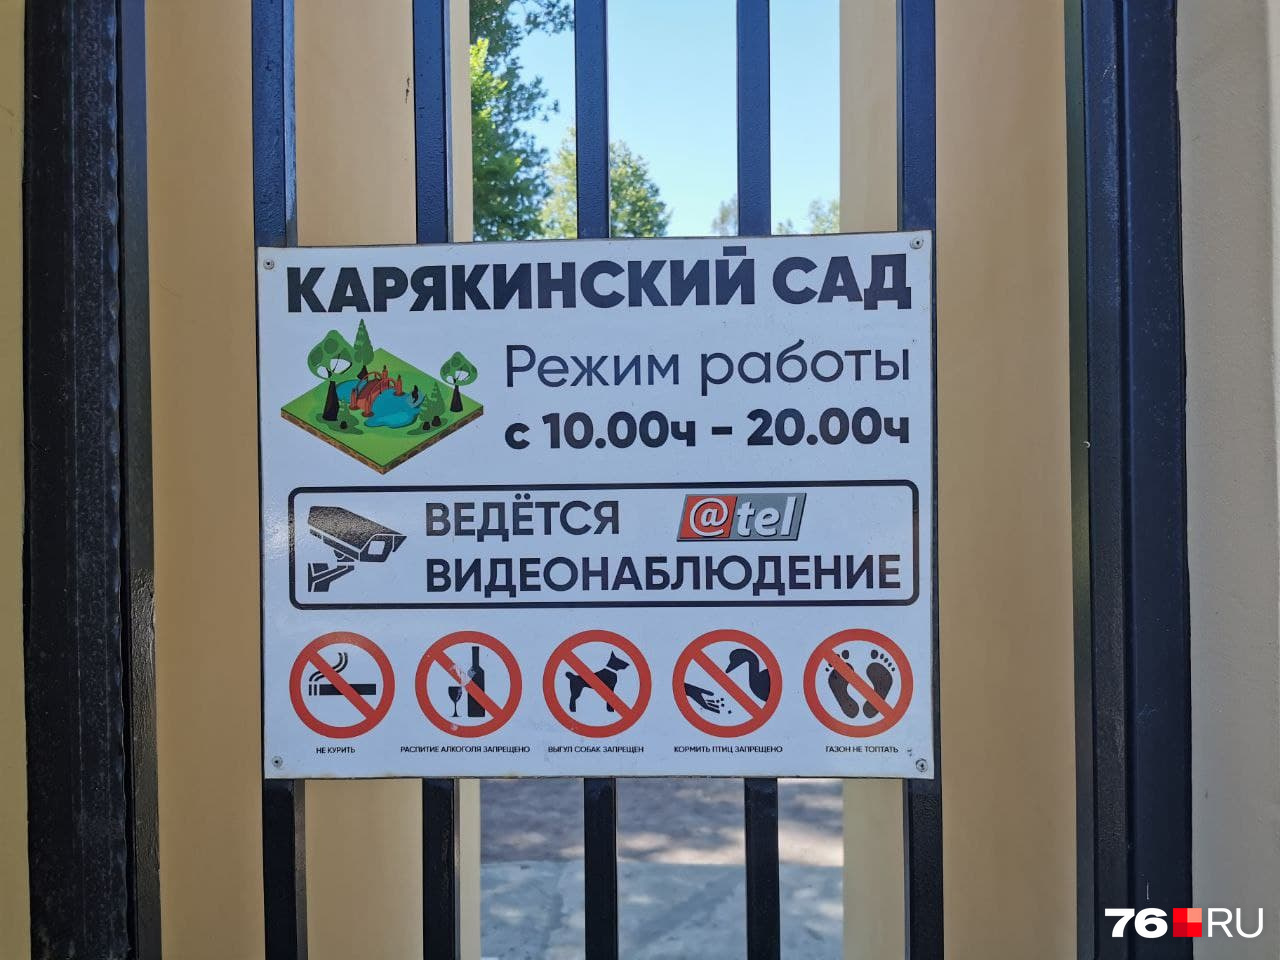 Чтобы посетители Карякинского сада даже не вздумали ничего здесь потрогать лишнего, их предупреждают — ведется видеонаблюдение